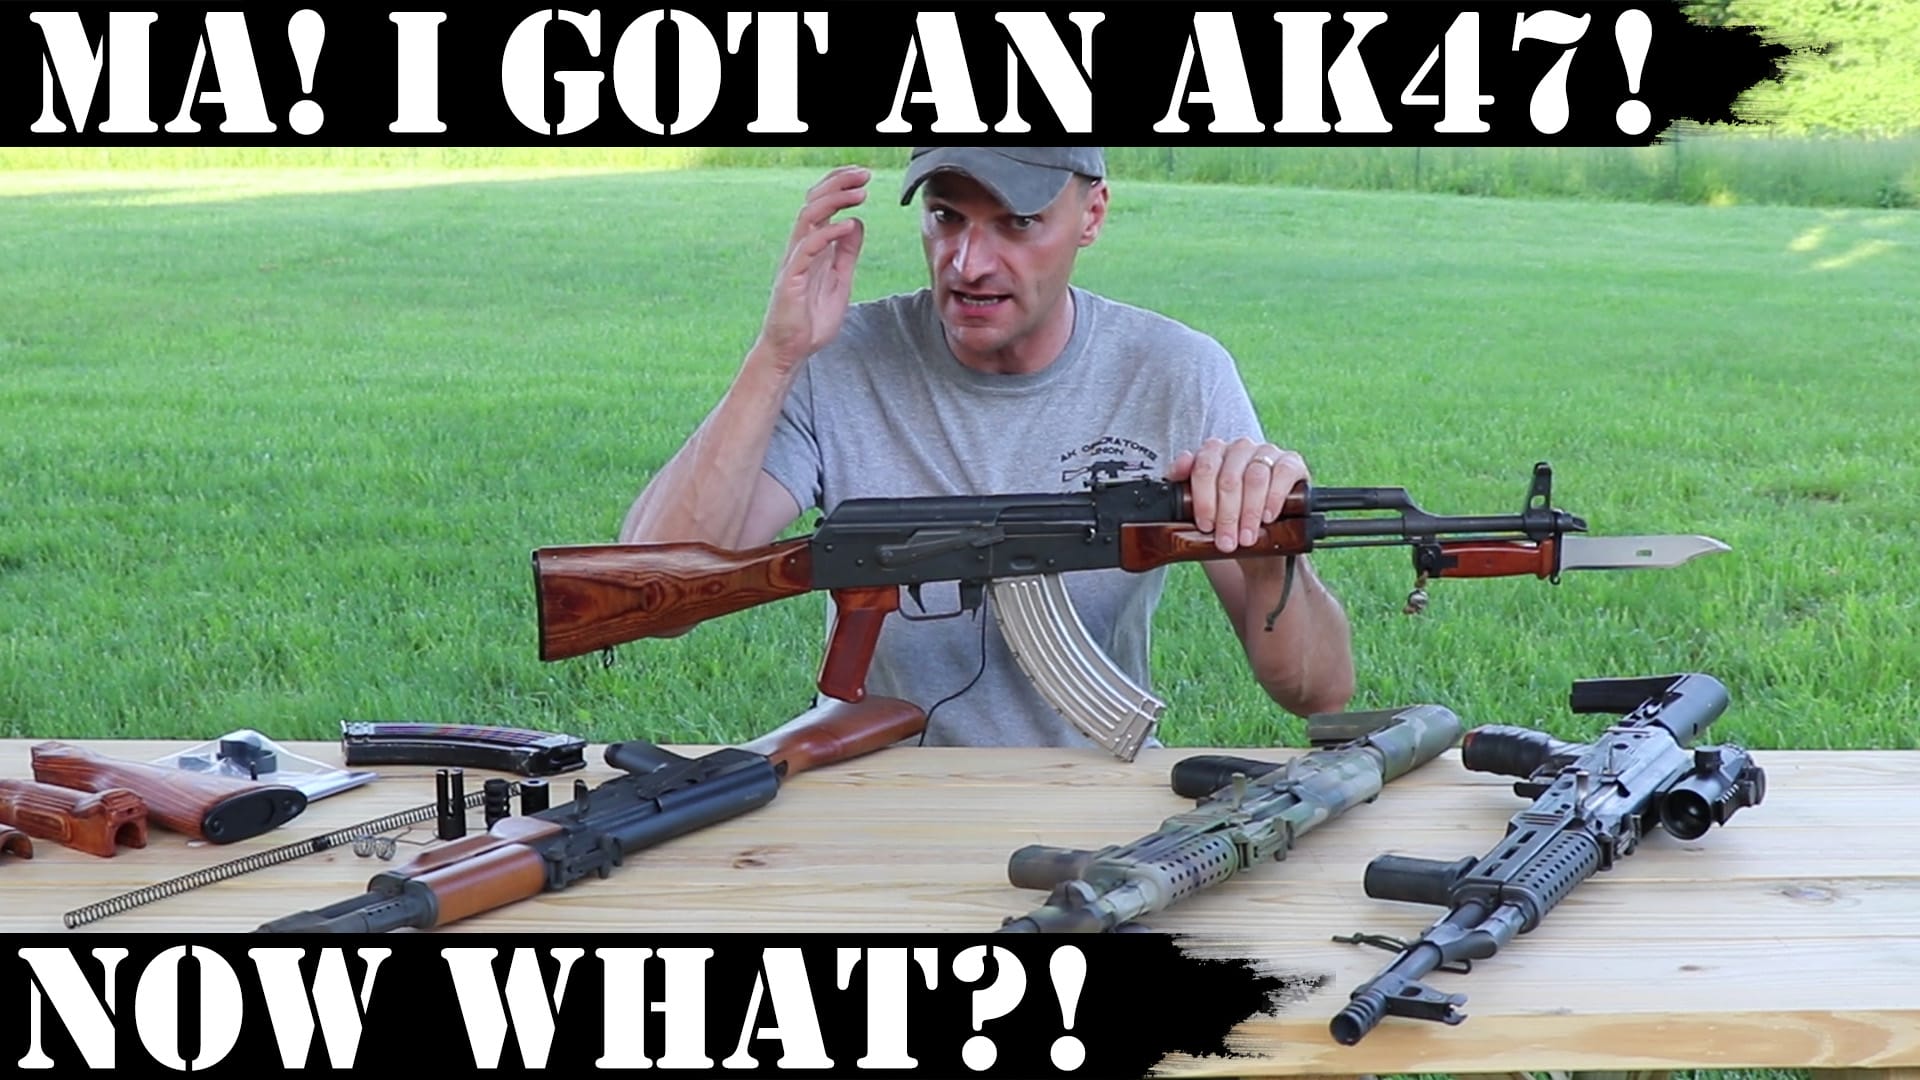 Ma! I got an AK47! Now what?!